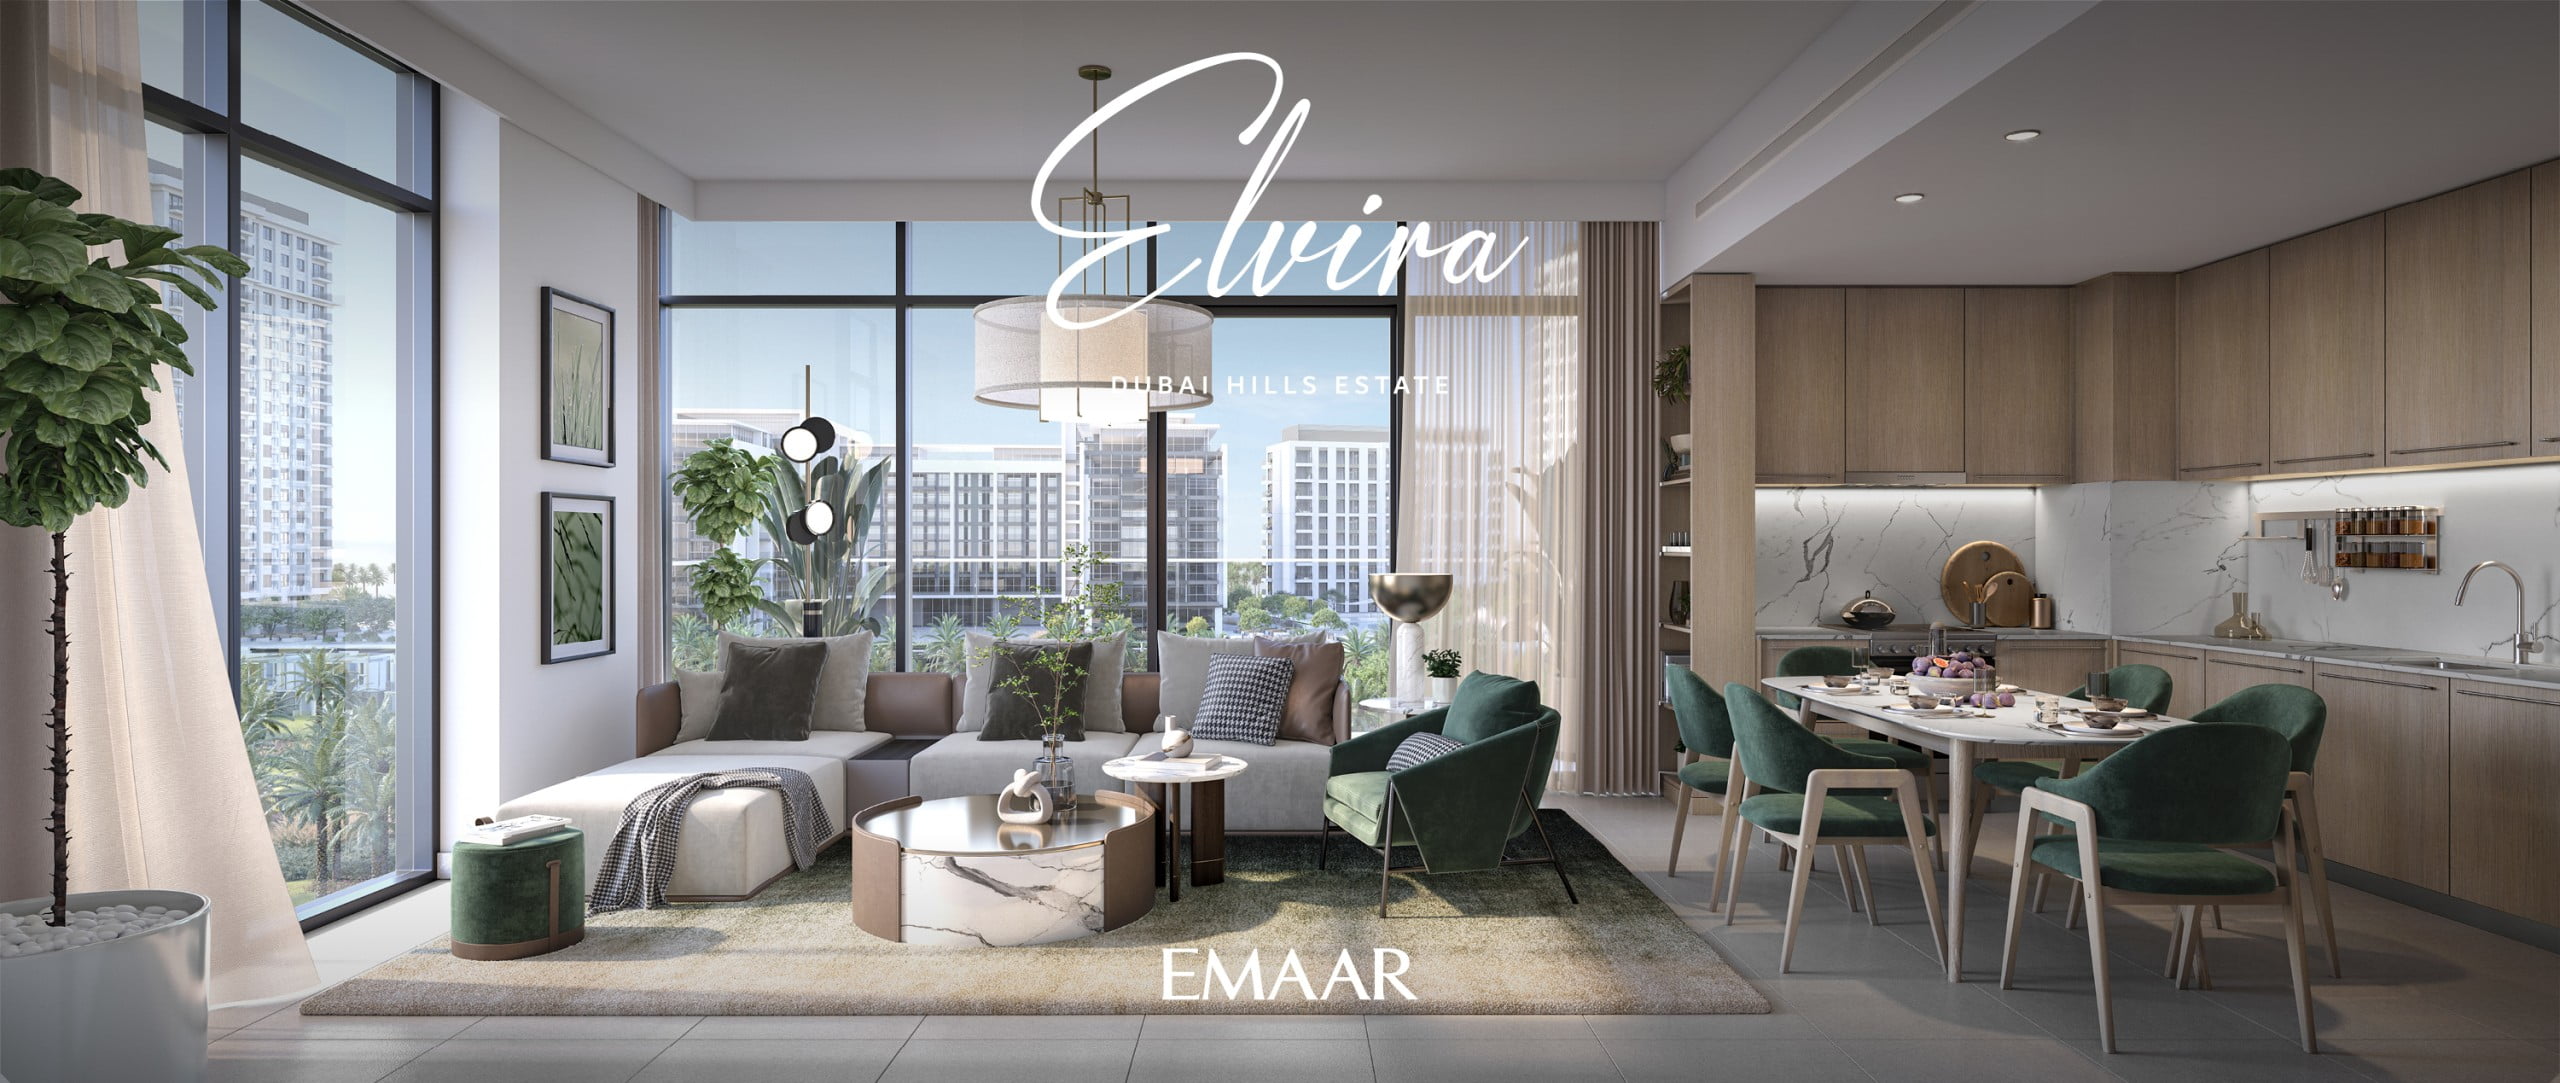 DHE ELVIRA RENDERS11 scaled - Immobilier Dubai